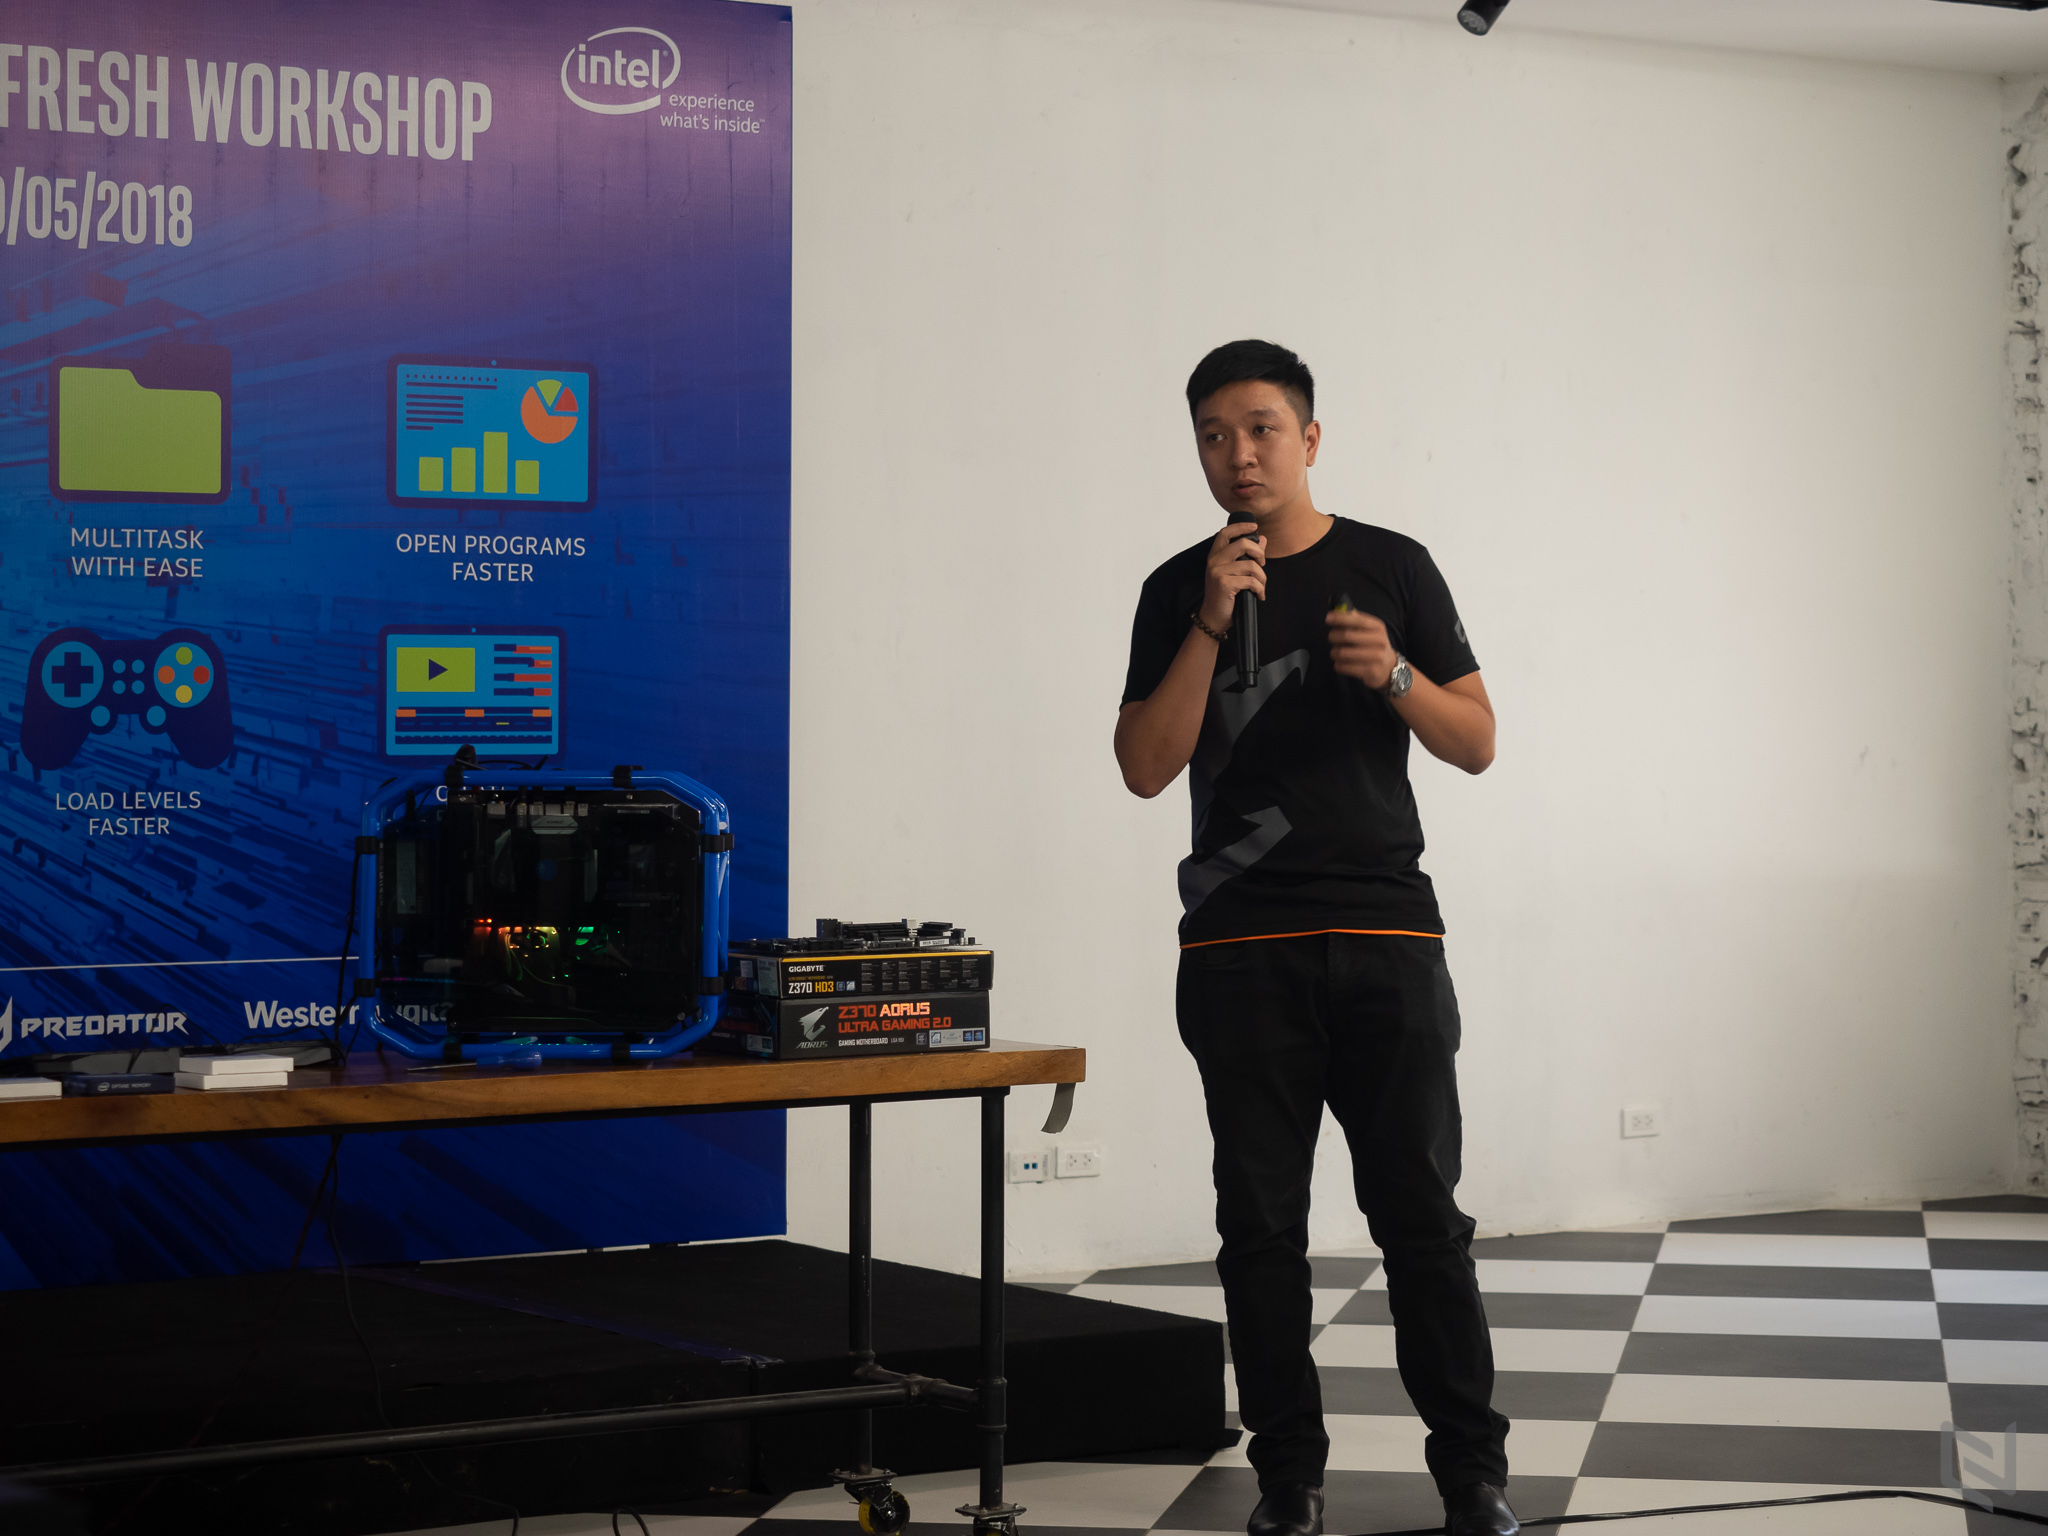 Hình ảnh buổi Workshop trình diễn hiệu năng ấn tượng của Intel Optane thế hệ mới